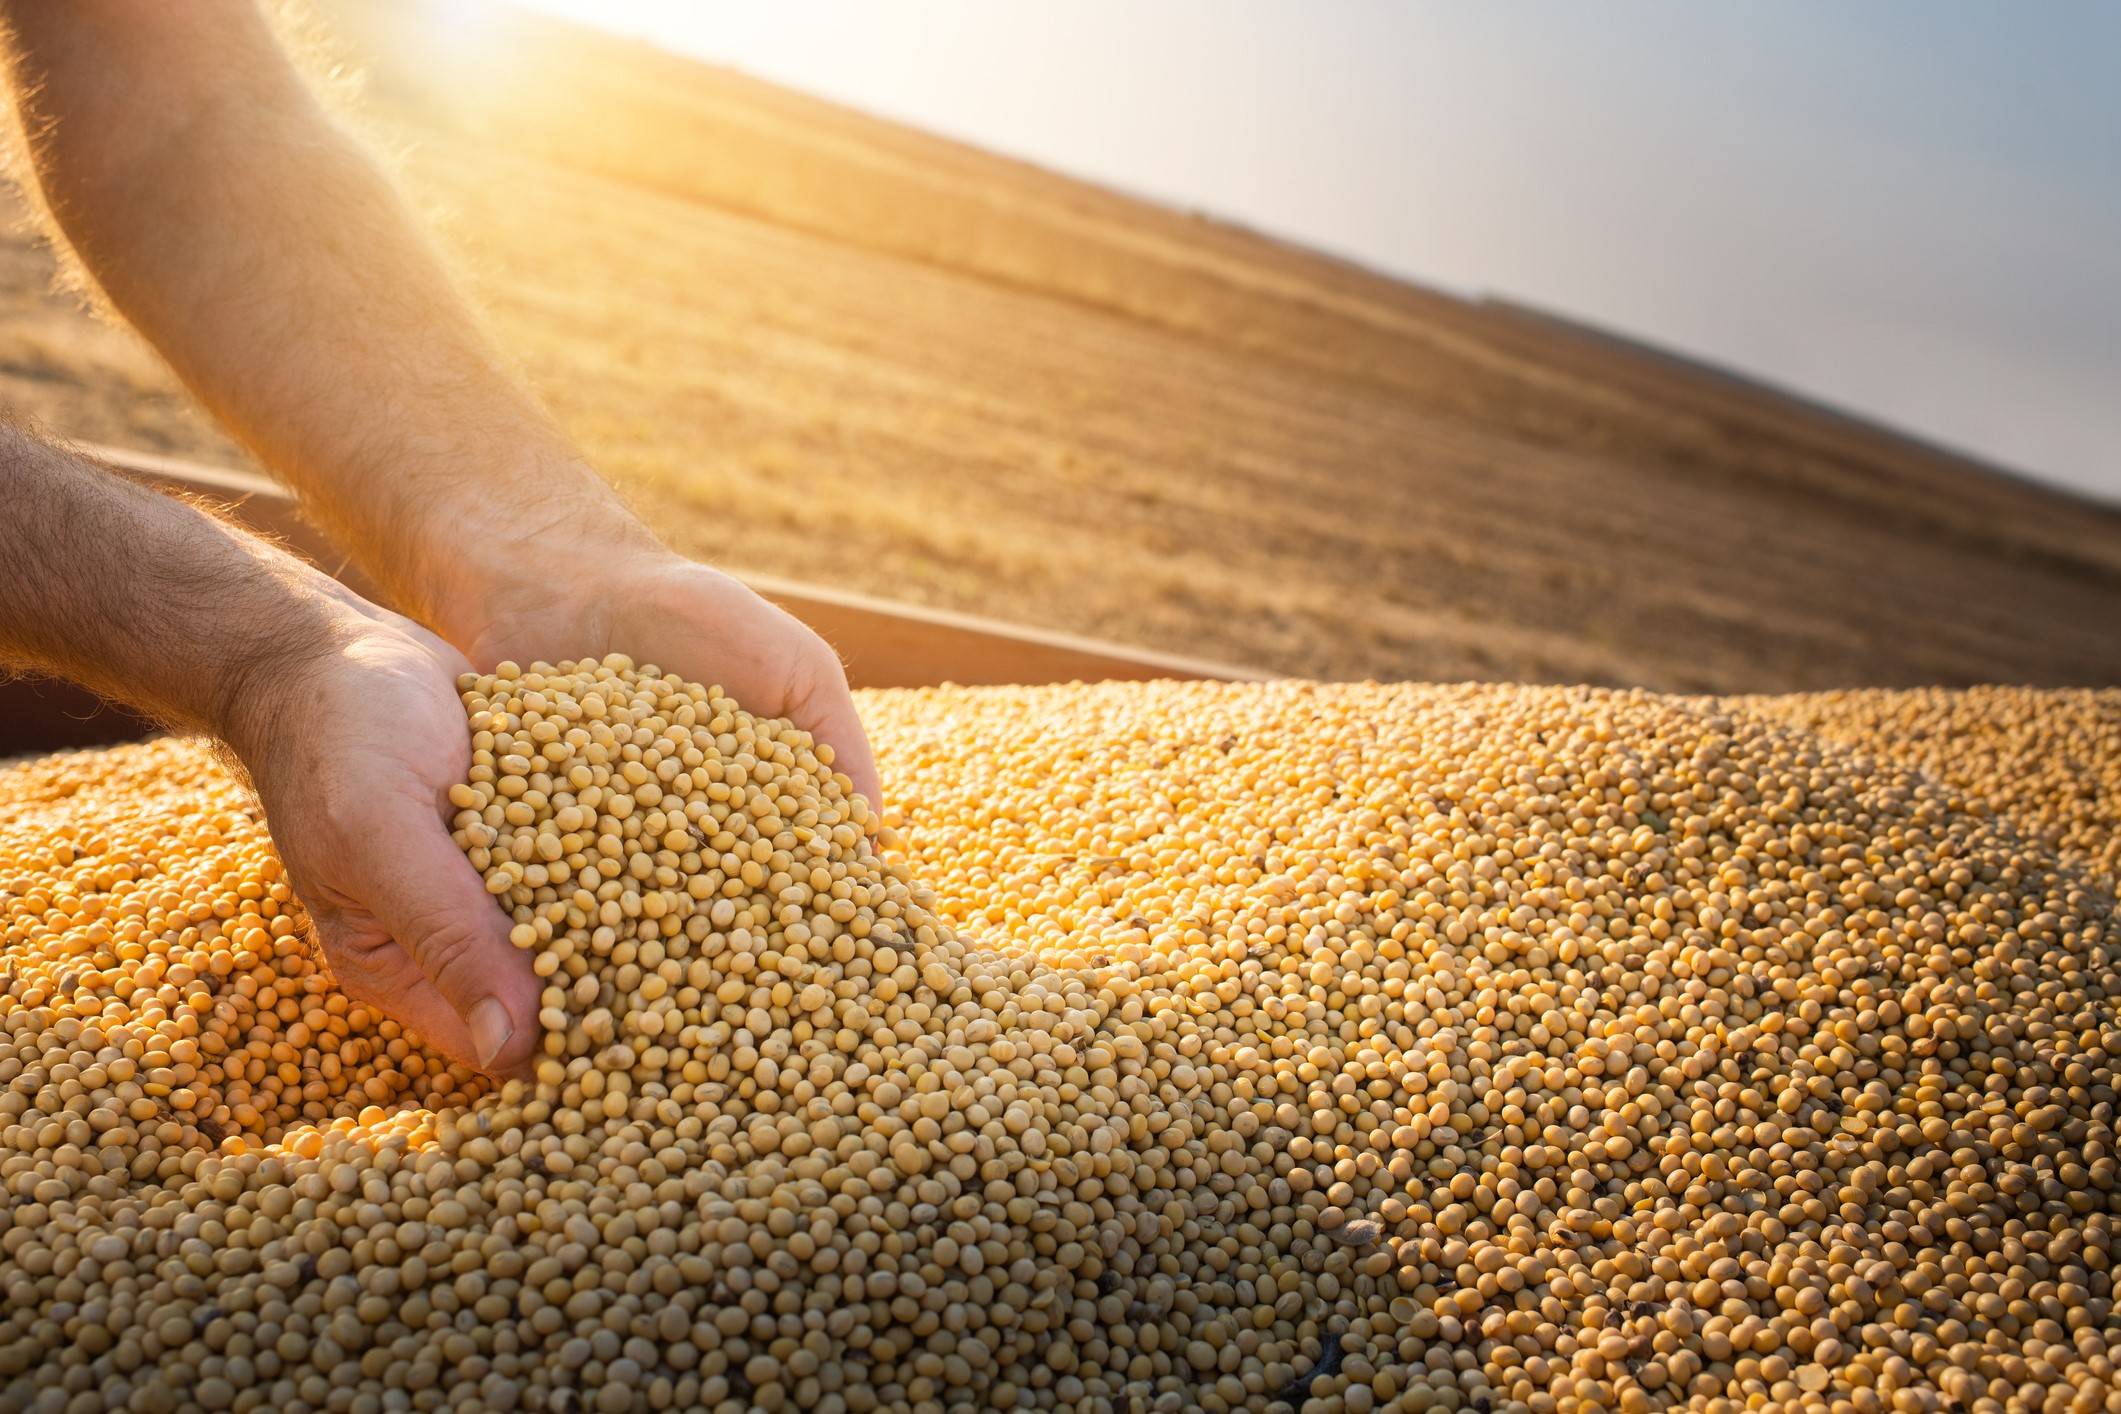 Tecnologia permite selecionar cultivares de soja com sementes de melhor qualidade